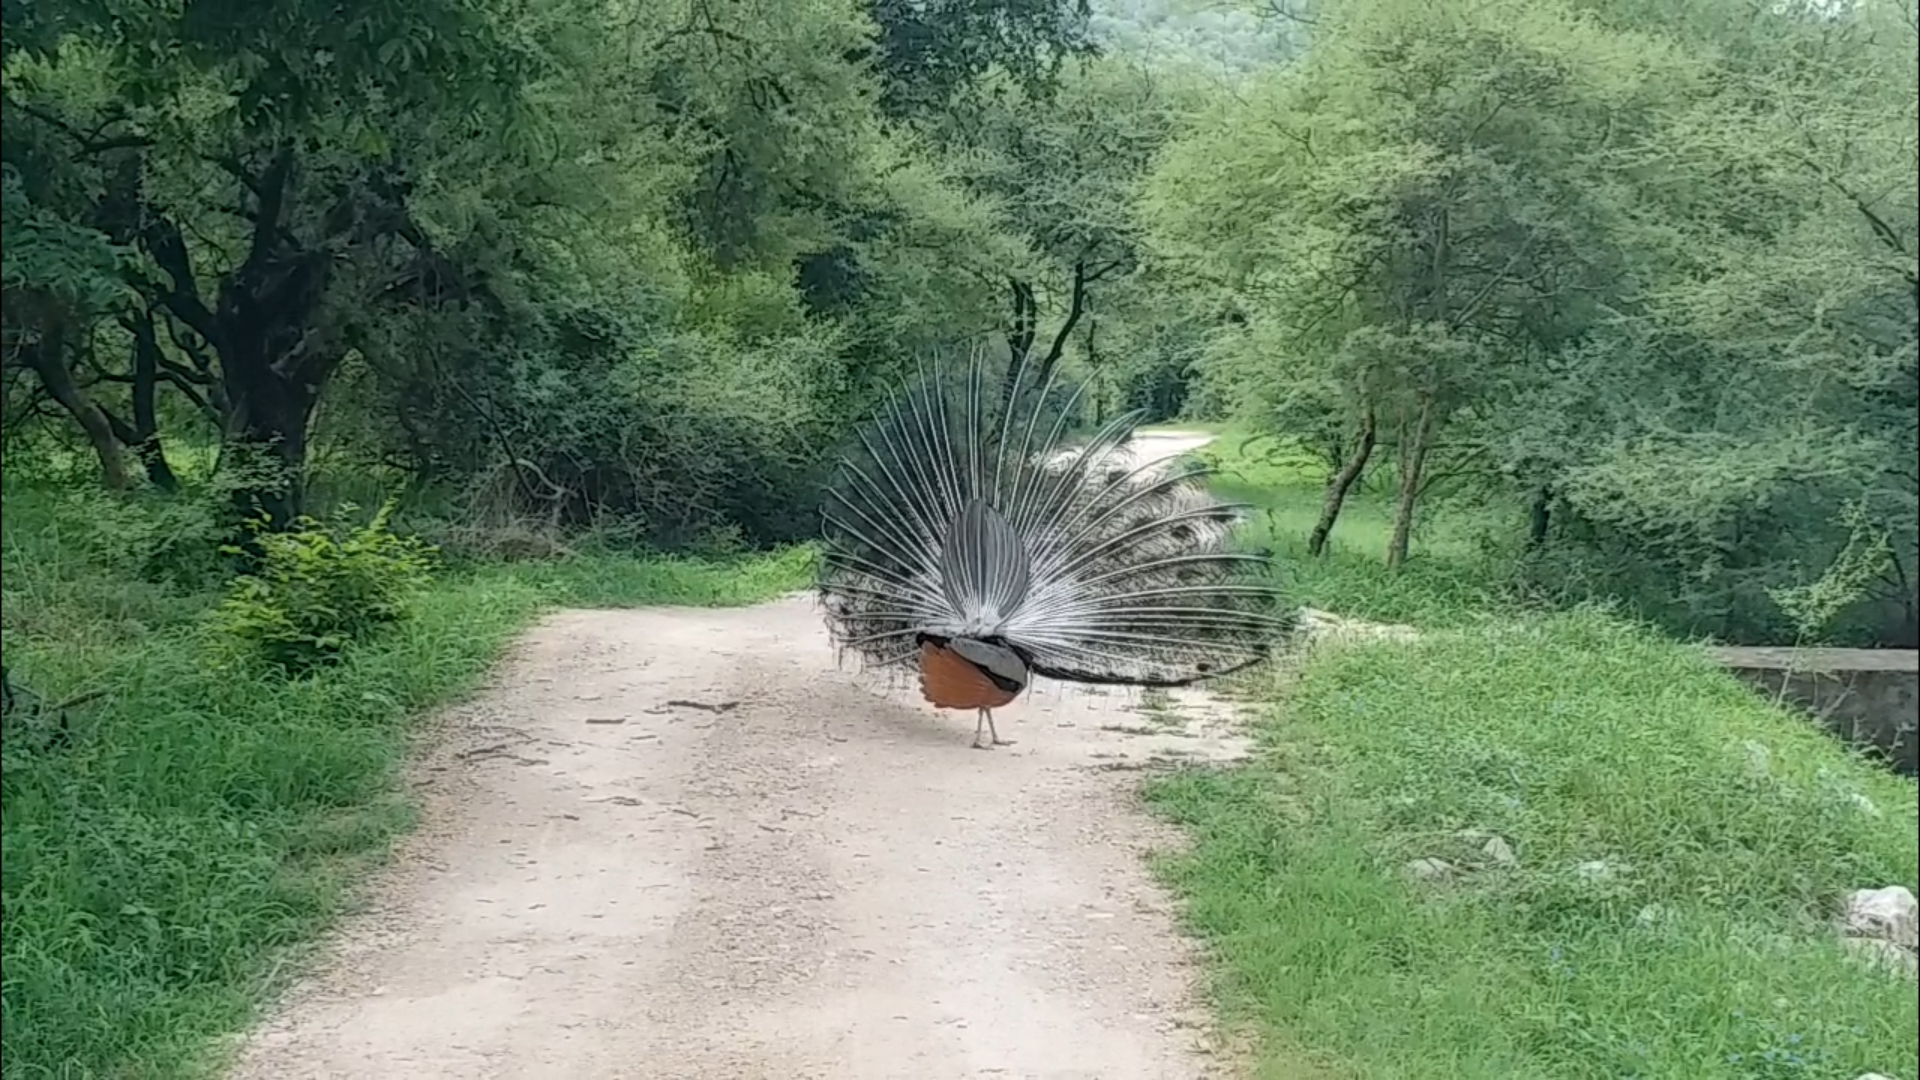 Jaipur Jhalana Reserve, World Animal Day 2021